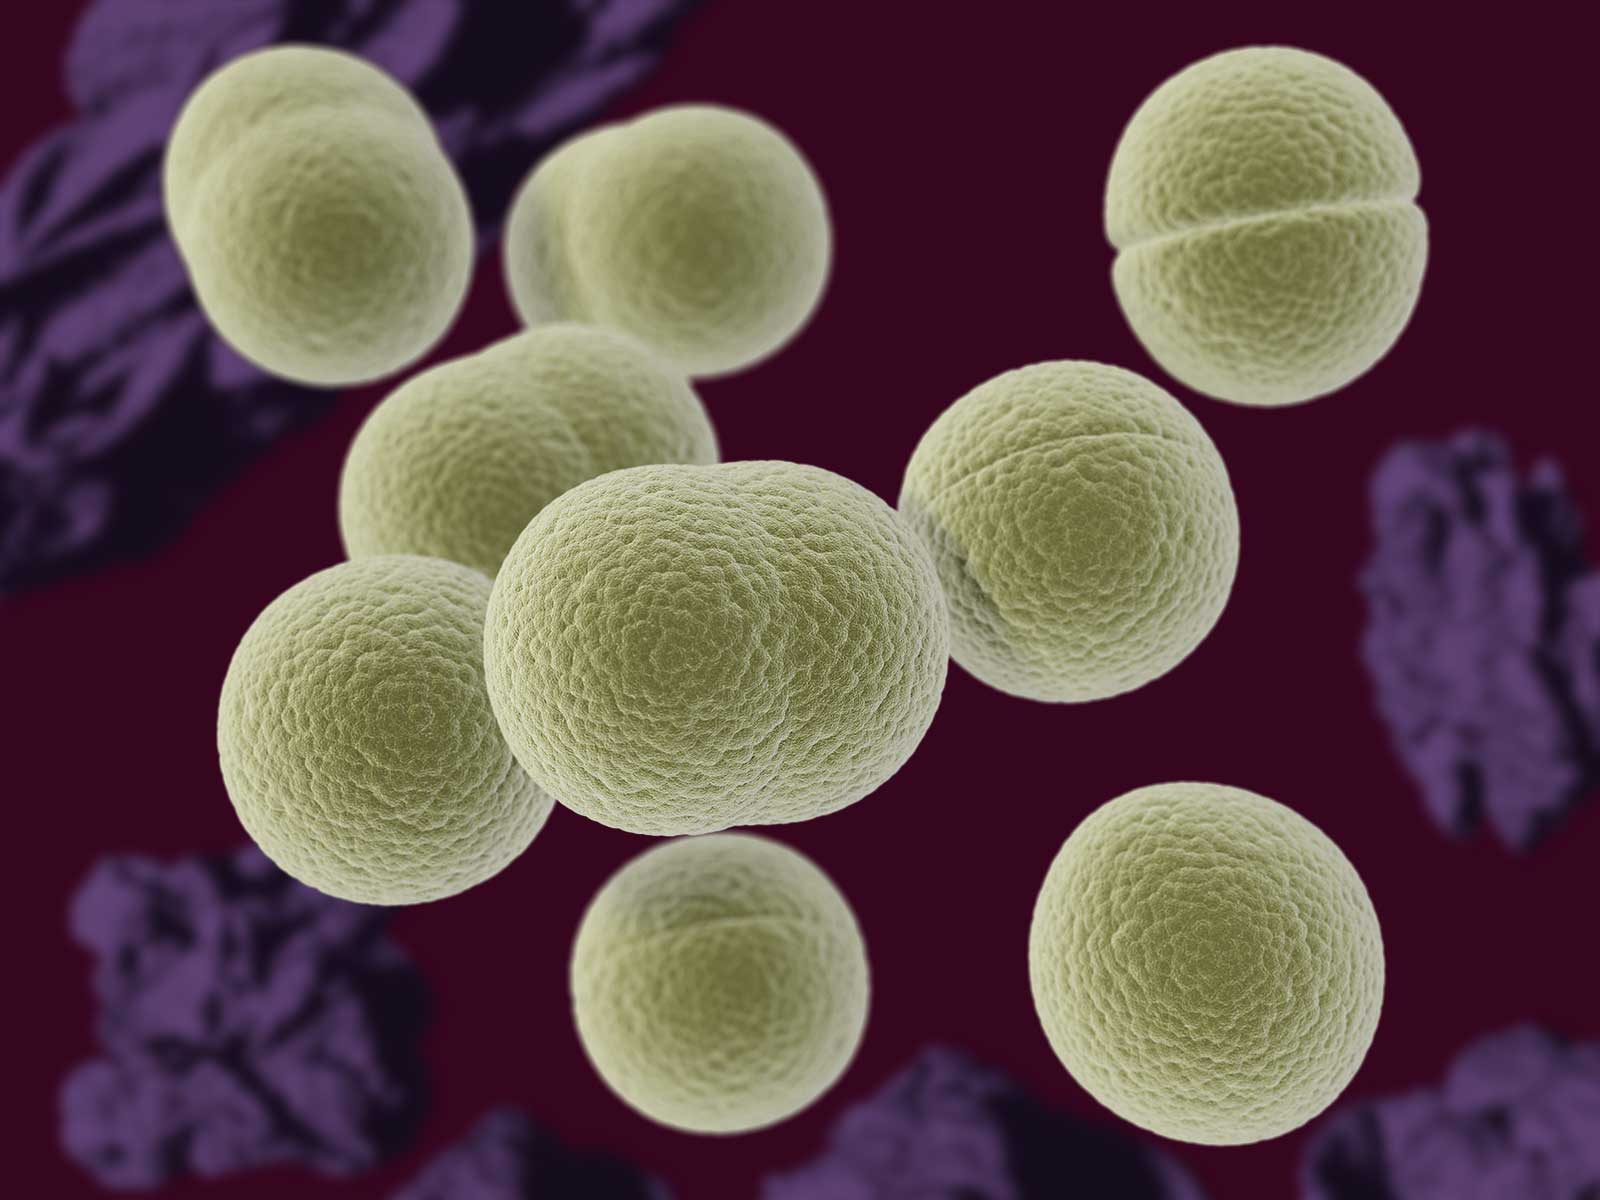 Staphylococcus aureus 3. Стафилококк ауреус микроскоп. Стрептококк ауреус. Стафилококк ауреус под микроскопом. Стафилококк ауреус микробиология.